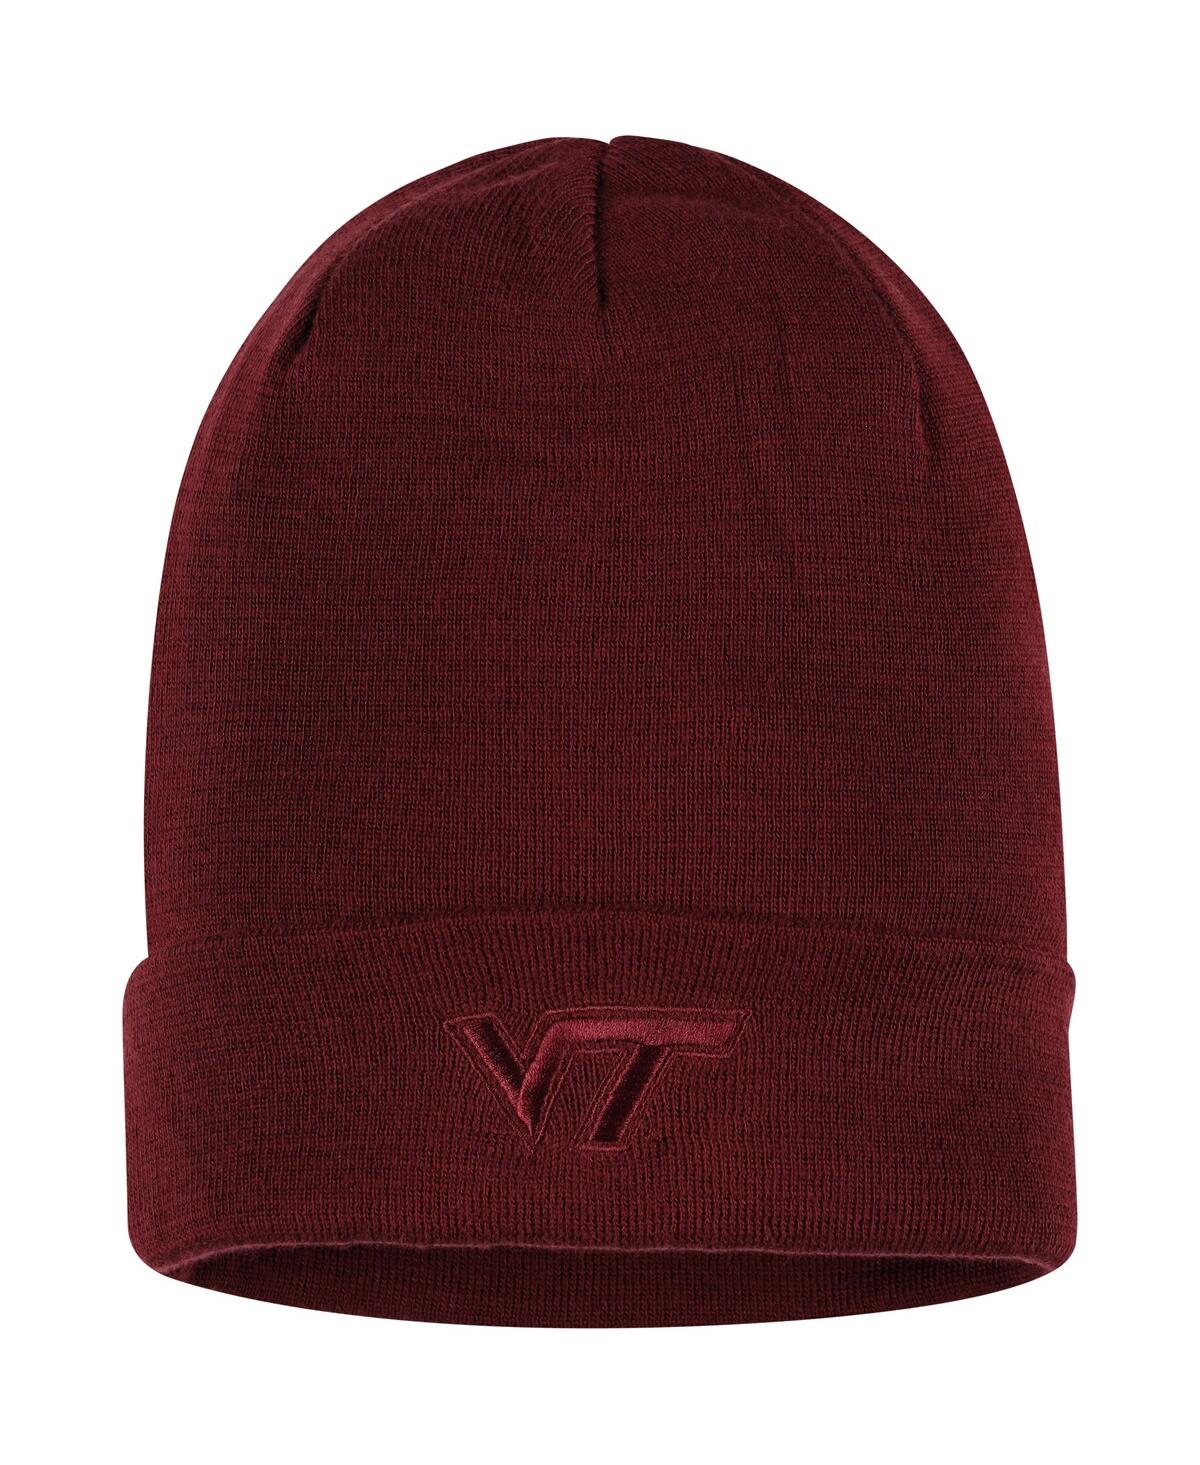 Shop Nike Men's  Maroon Virginia Tech Hokies Tonal Cuffed Knit Hat